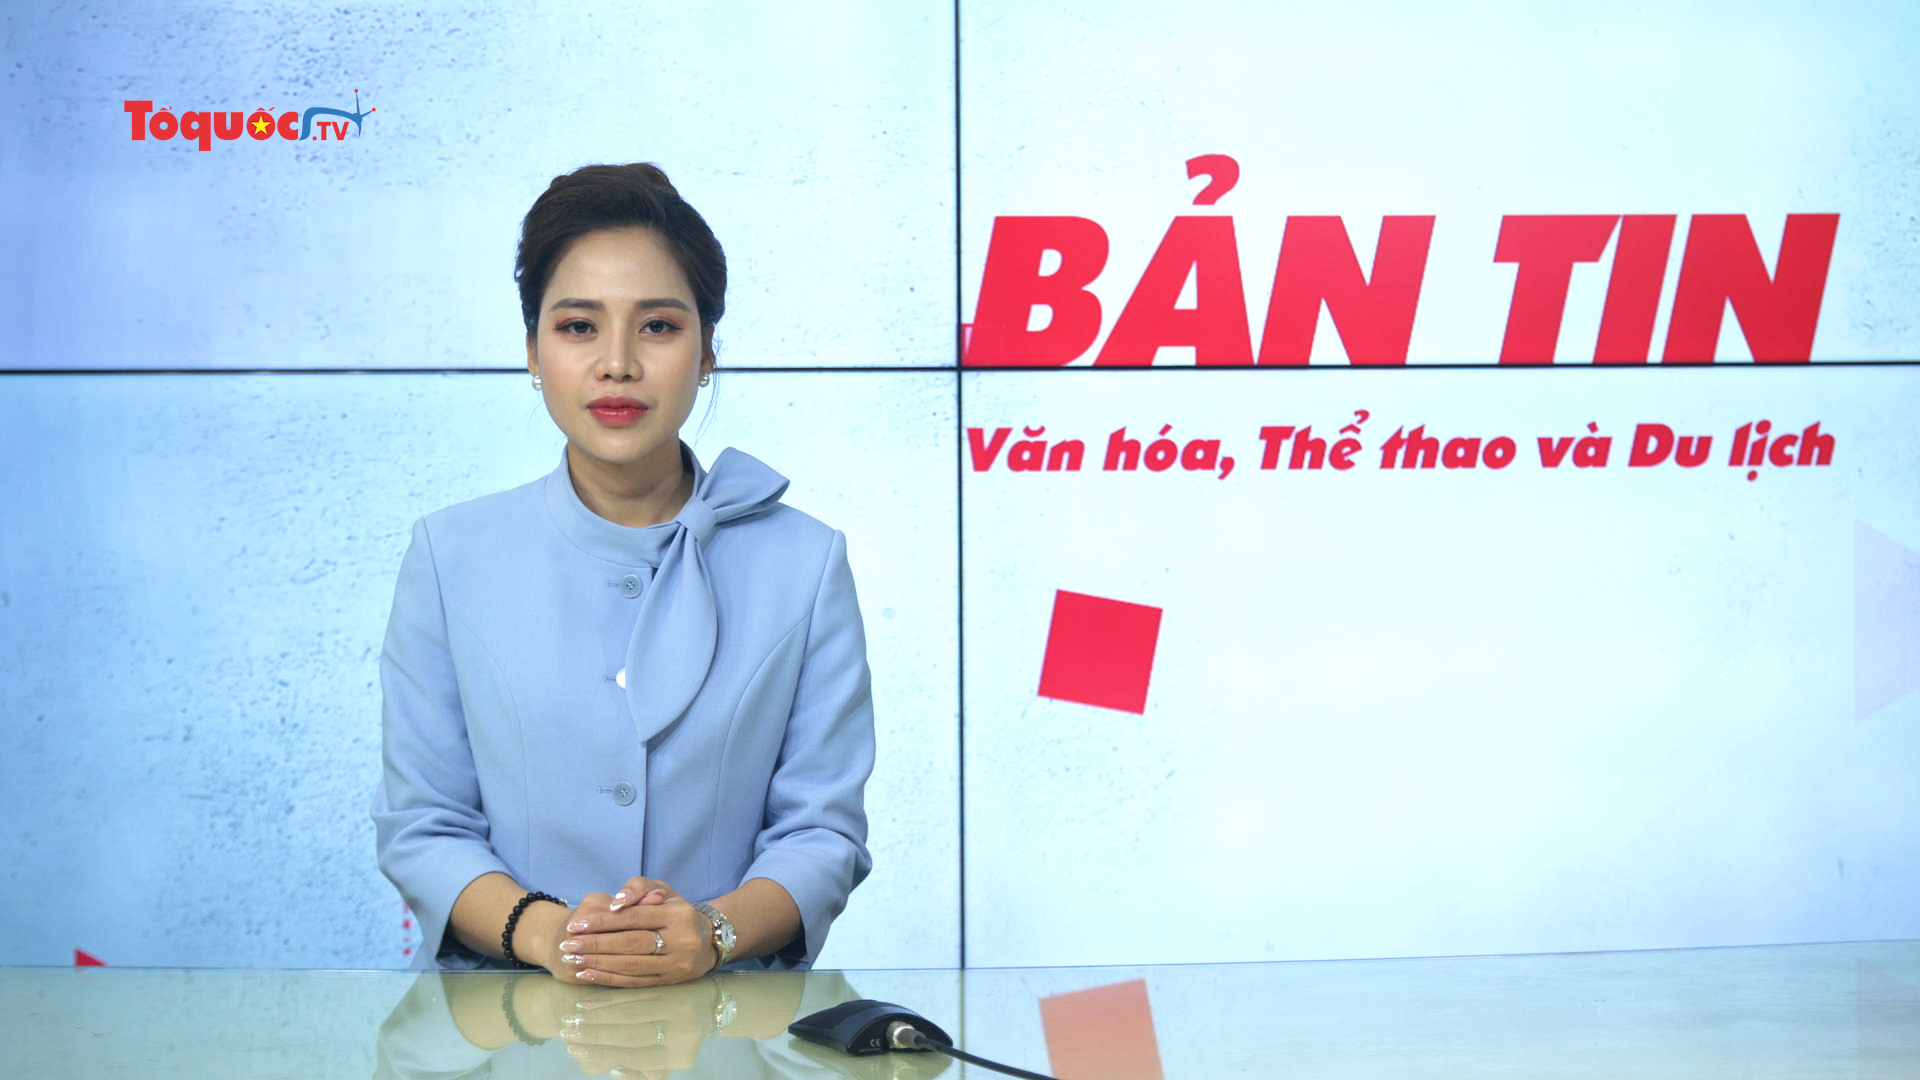 Bản tin truyền hình số 259: Làm giàu thêm bản sắc cho thương hiệu Việt Nam trên trường quốc tế